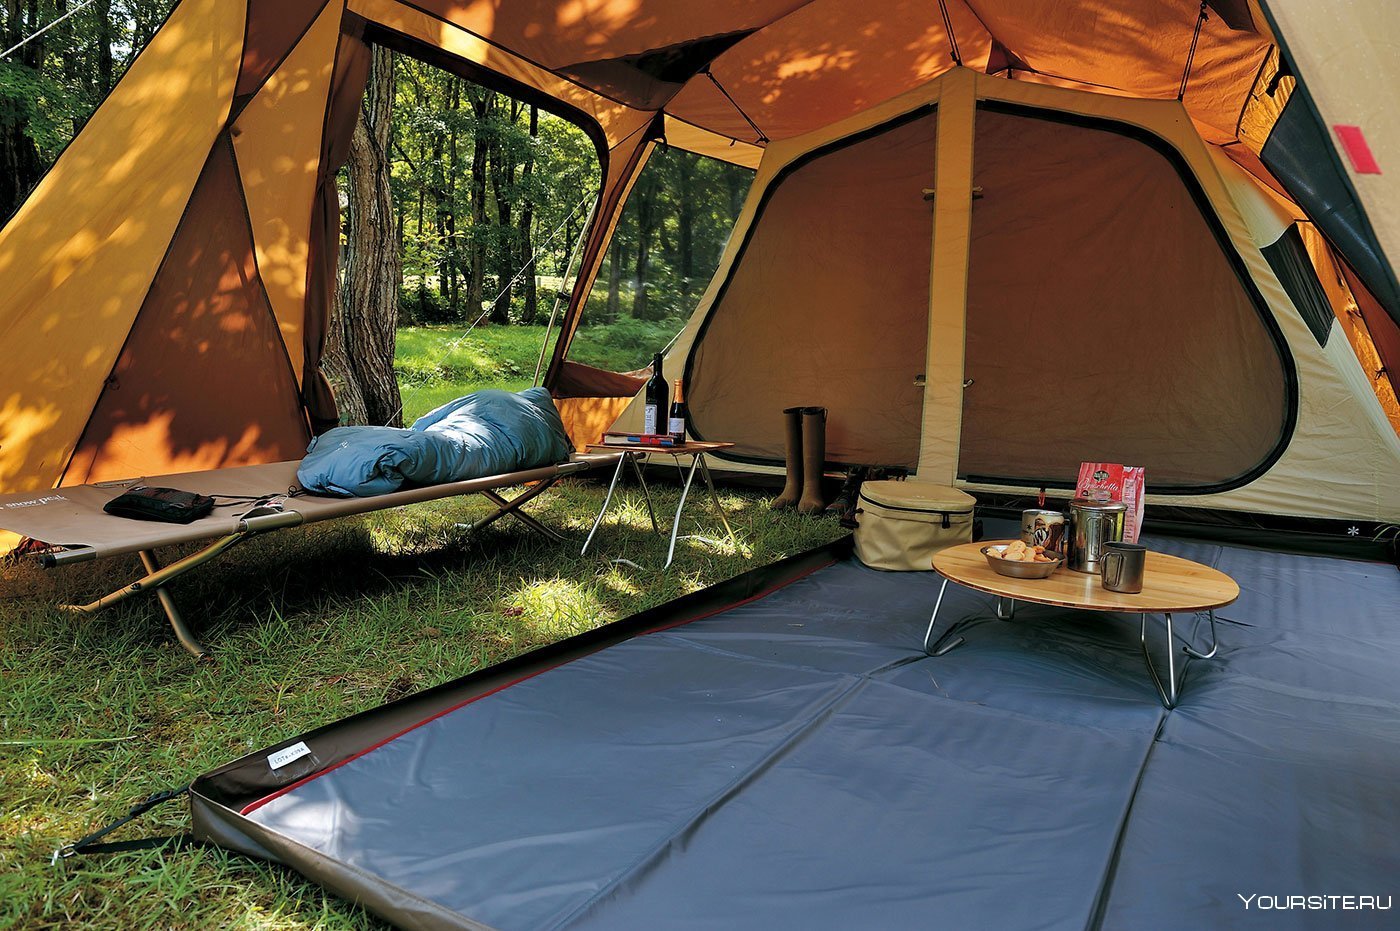 Palatka. Лагерь модульный (шатер и 2 палатки) Nash Base Camp. Палатка Camping Tent. Туристическая кепинг палатка. Туристическая палатка nature Camping 1908.